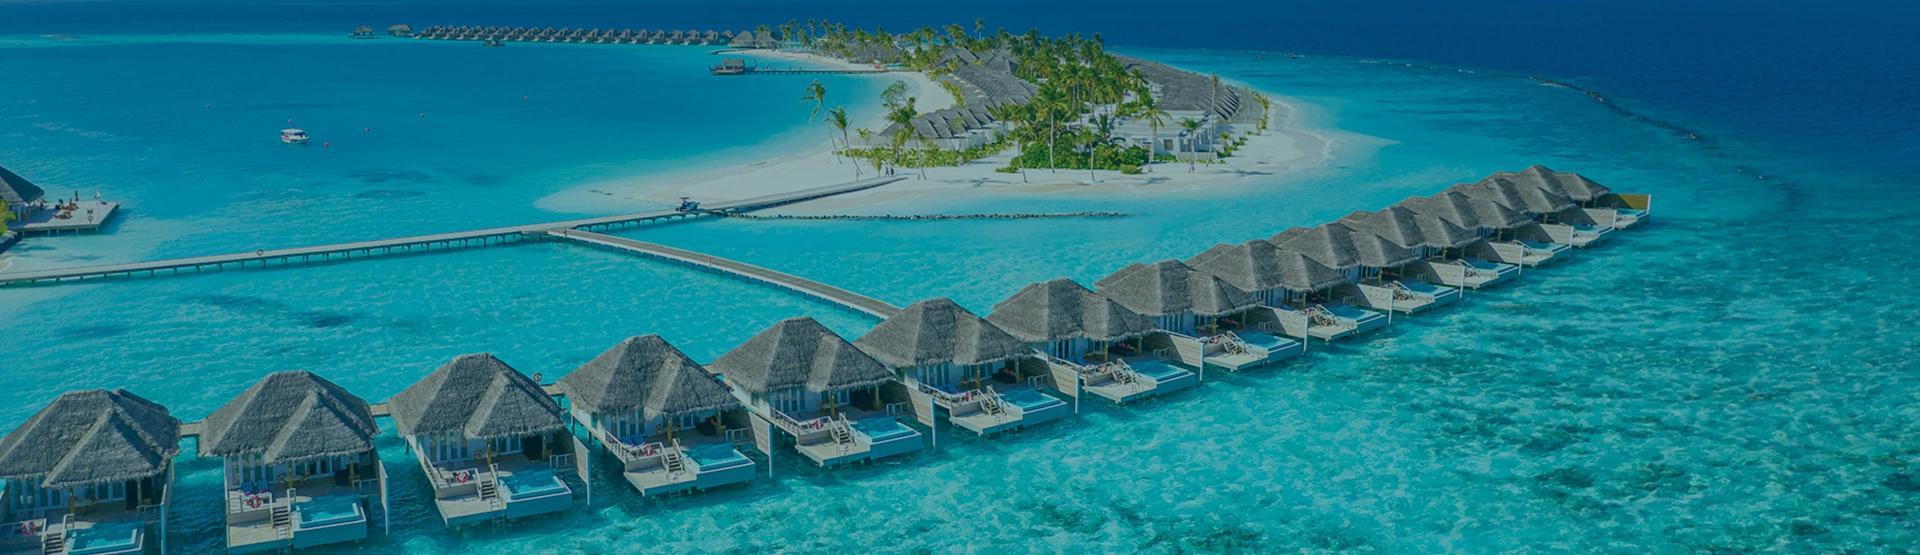 حجز رحلات طيران من كوريتيبا إلى جزر المالديف